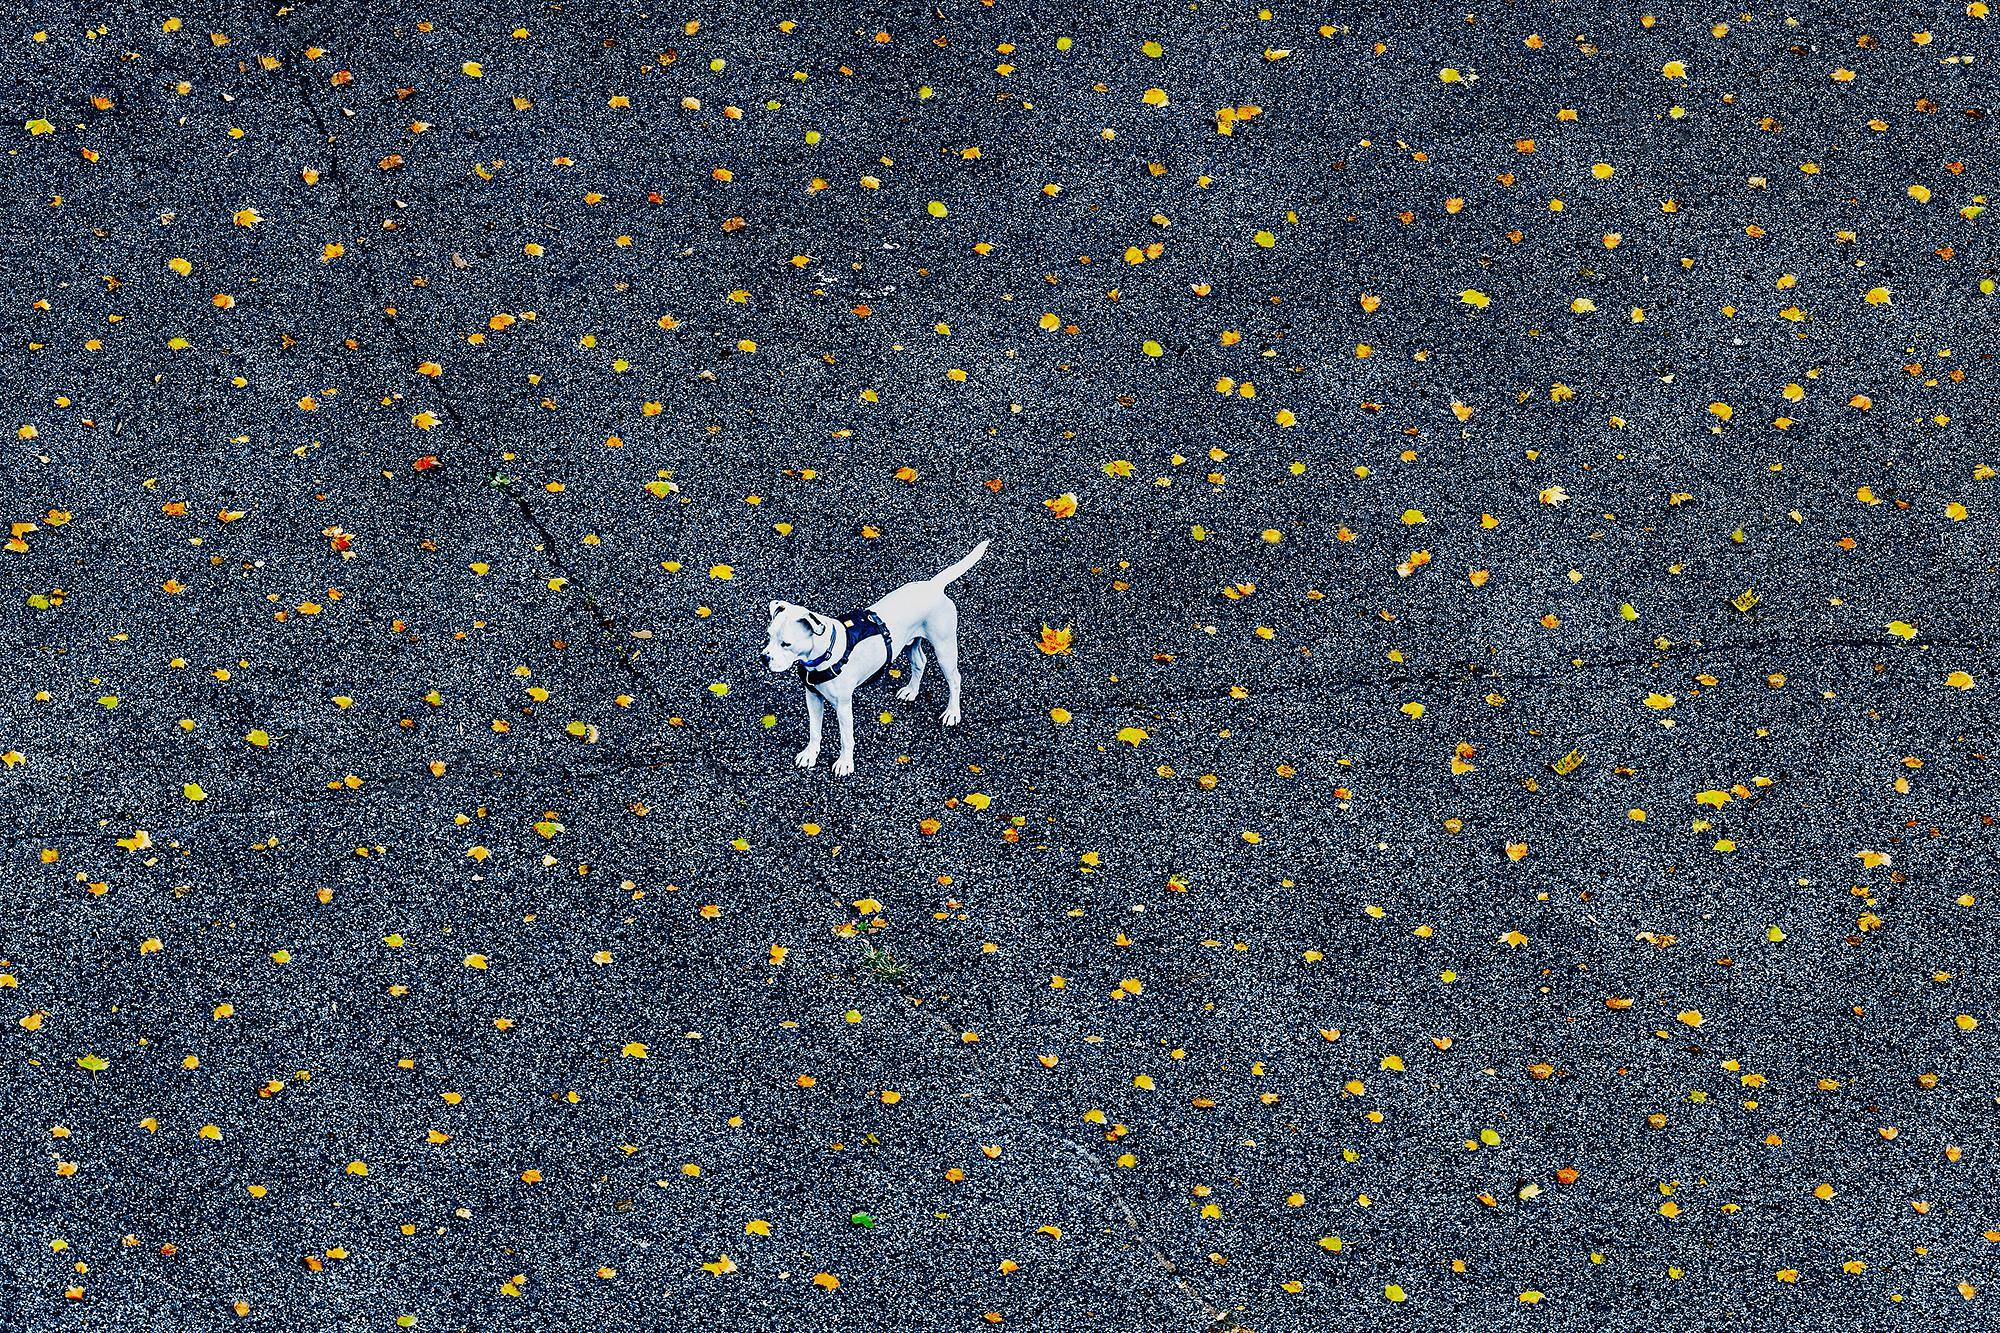 Mitchell Funk Landscape Photograph – Manhattan, Weißer Hund unter herbstlichen Blättern,  Minimalismus